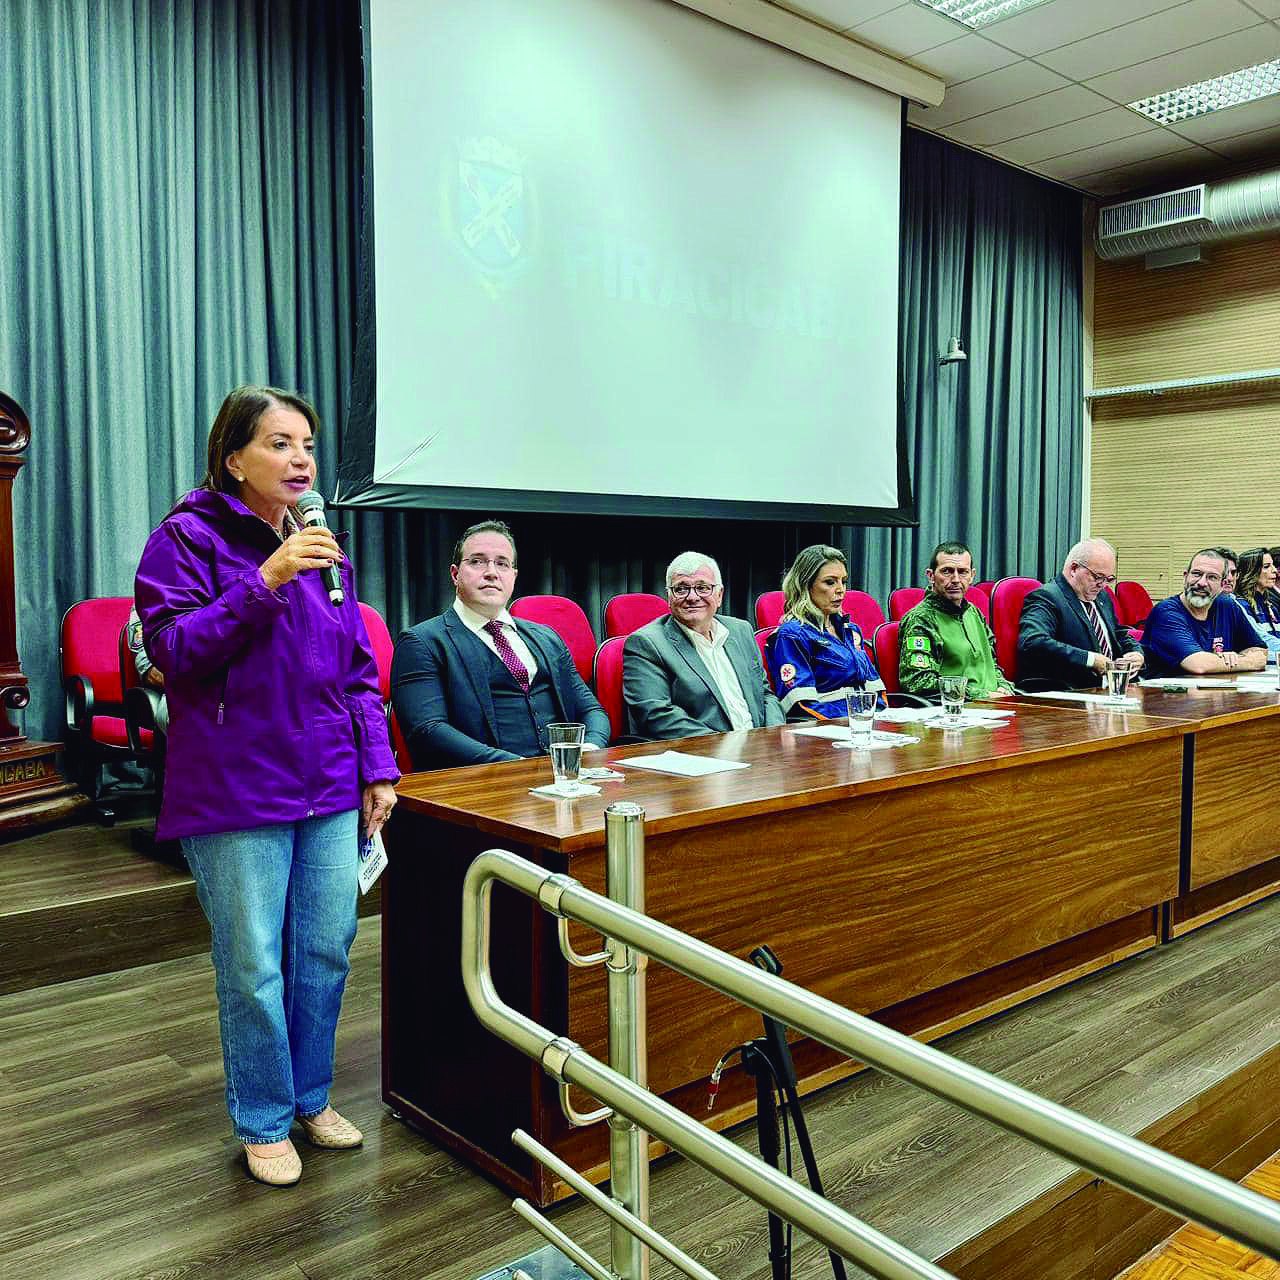 Bebel destaca que o SAMU, um programa público de Estado, foi criado pelo presidente Lula: “não caiu do céu e que isso precisa ser lembrado”

